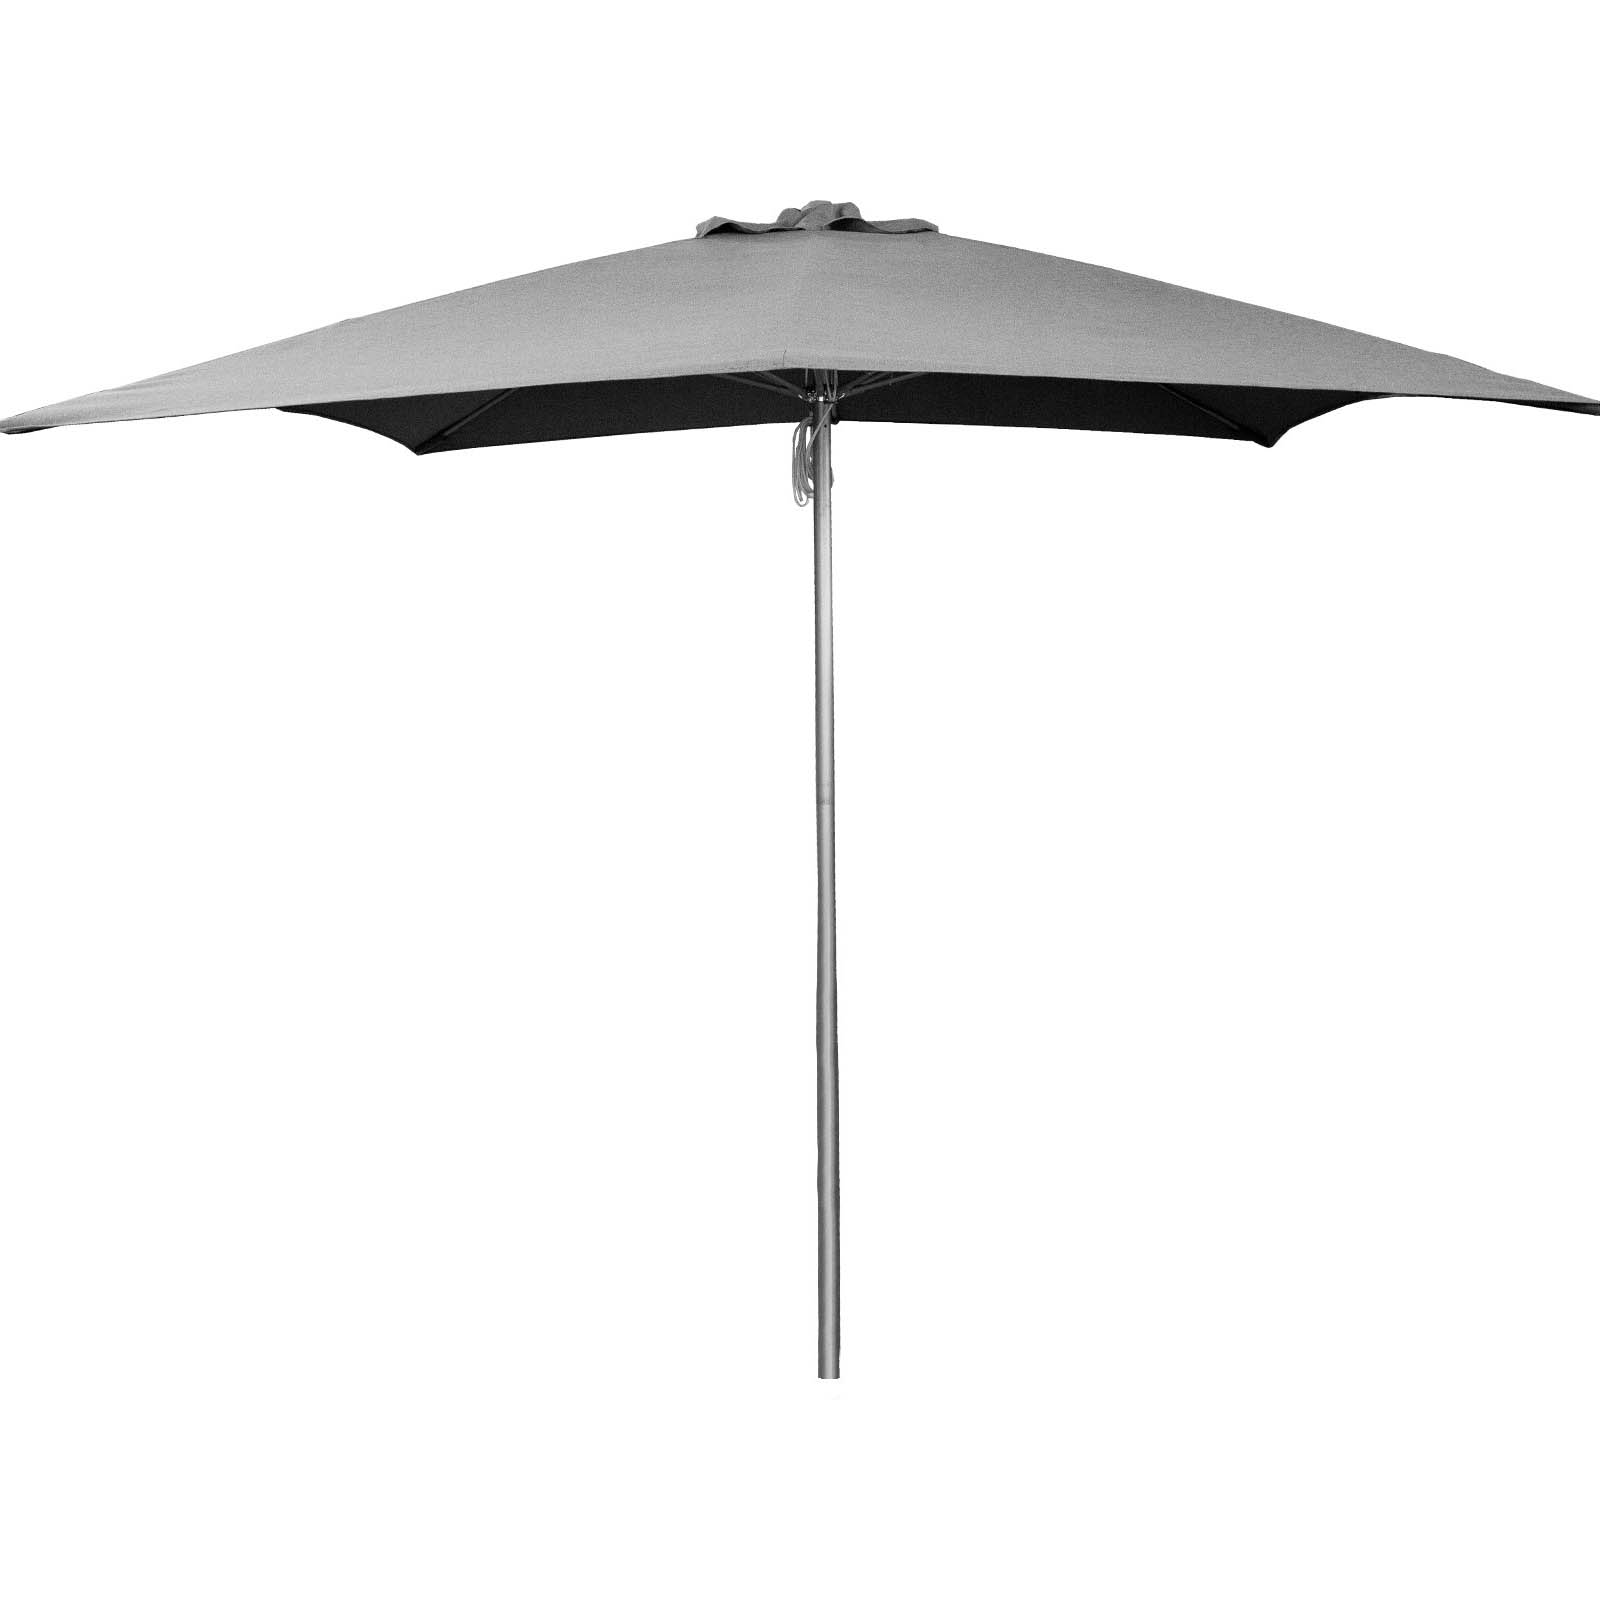 Shadow parasol mit Seilzug für 3x3 m aus Aluminium in